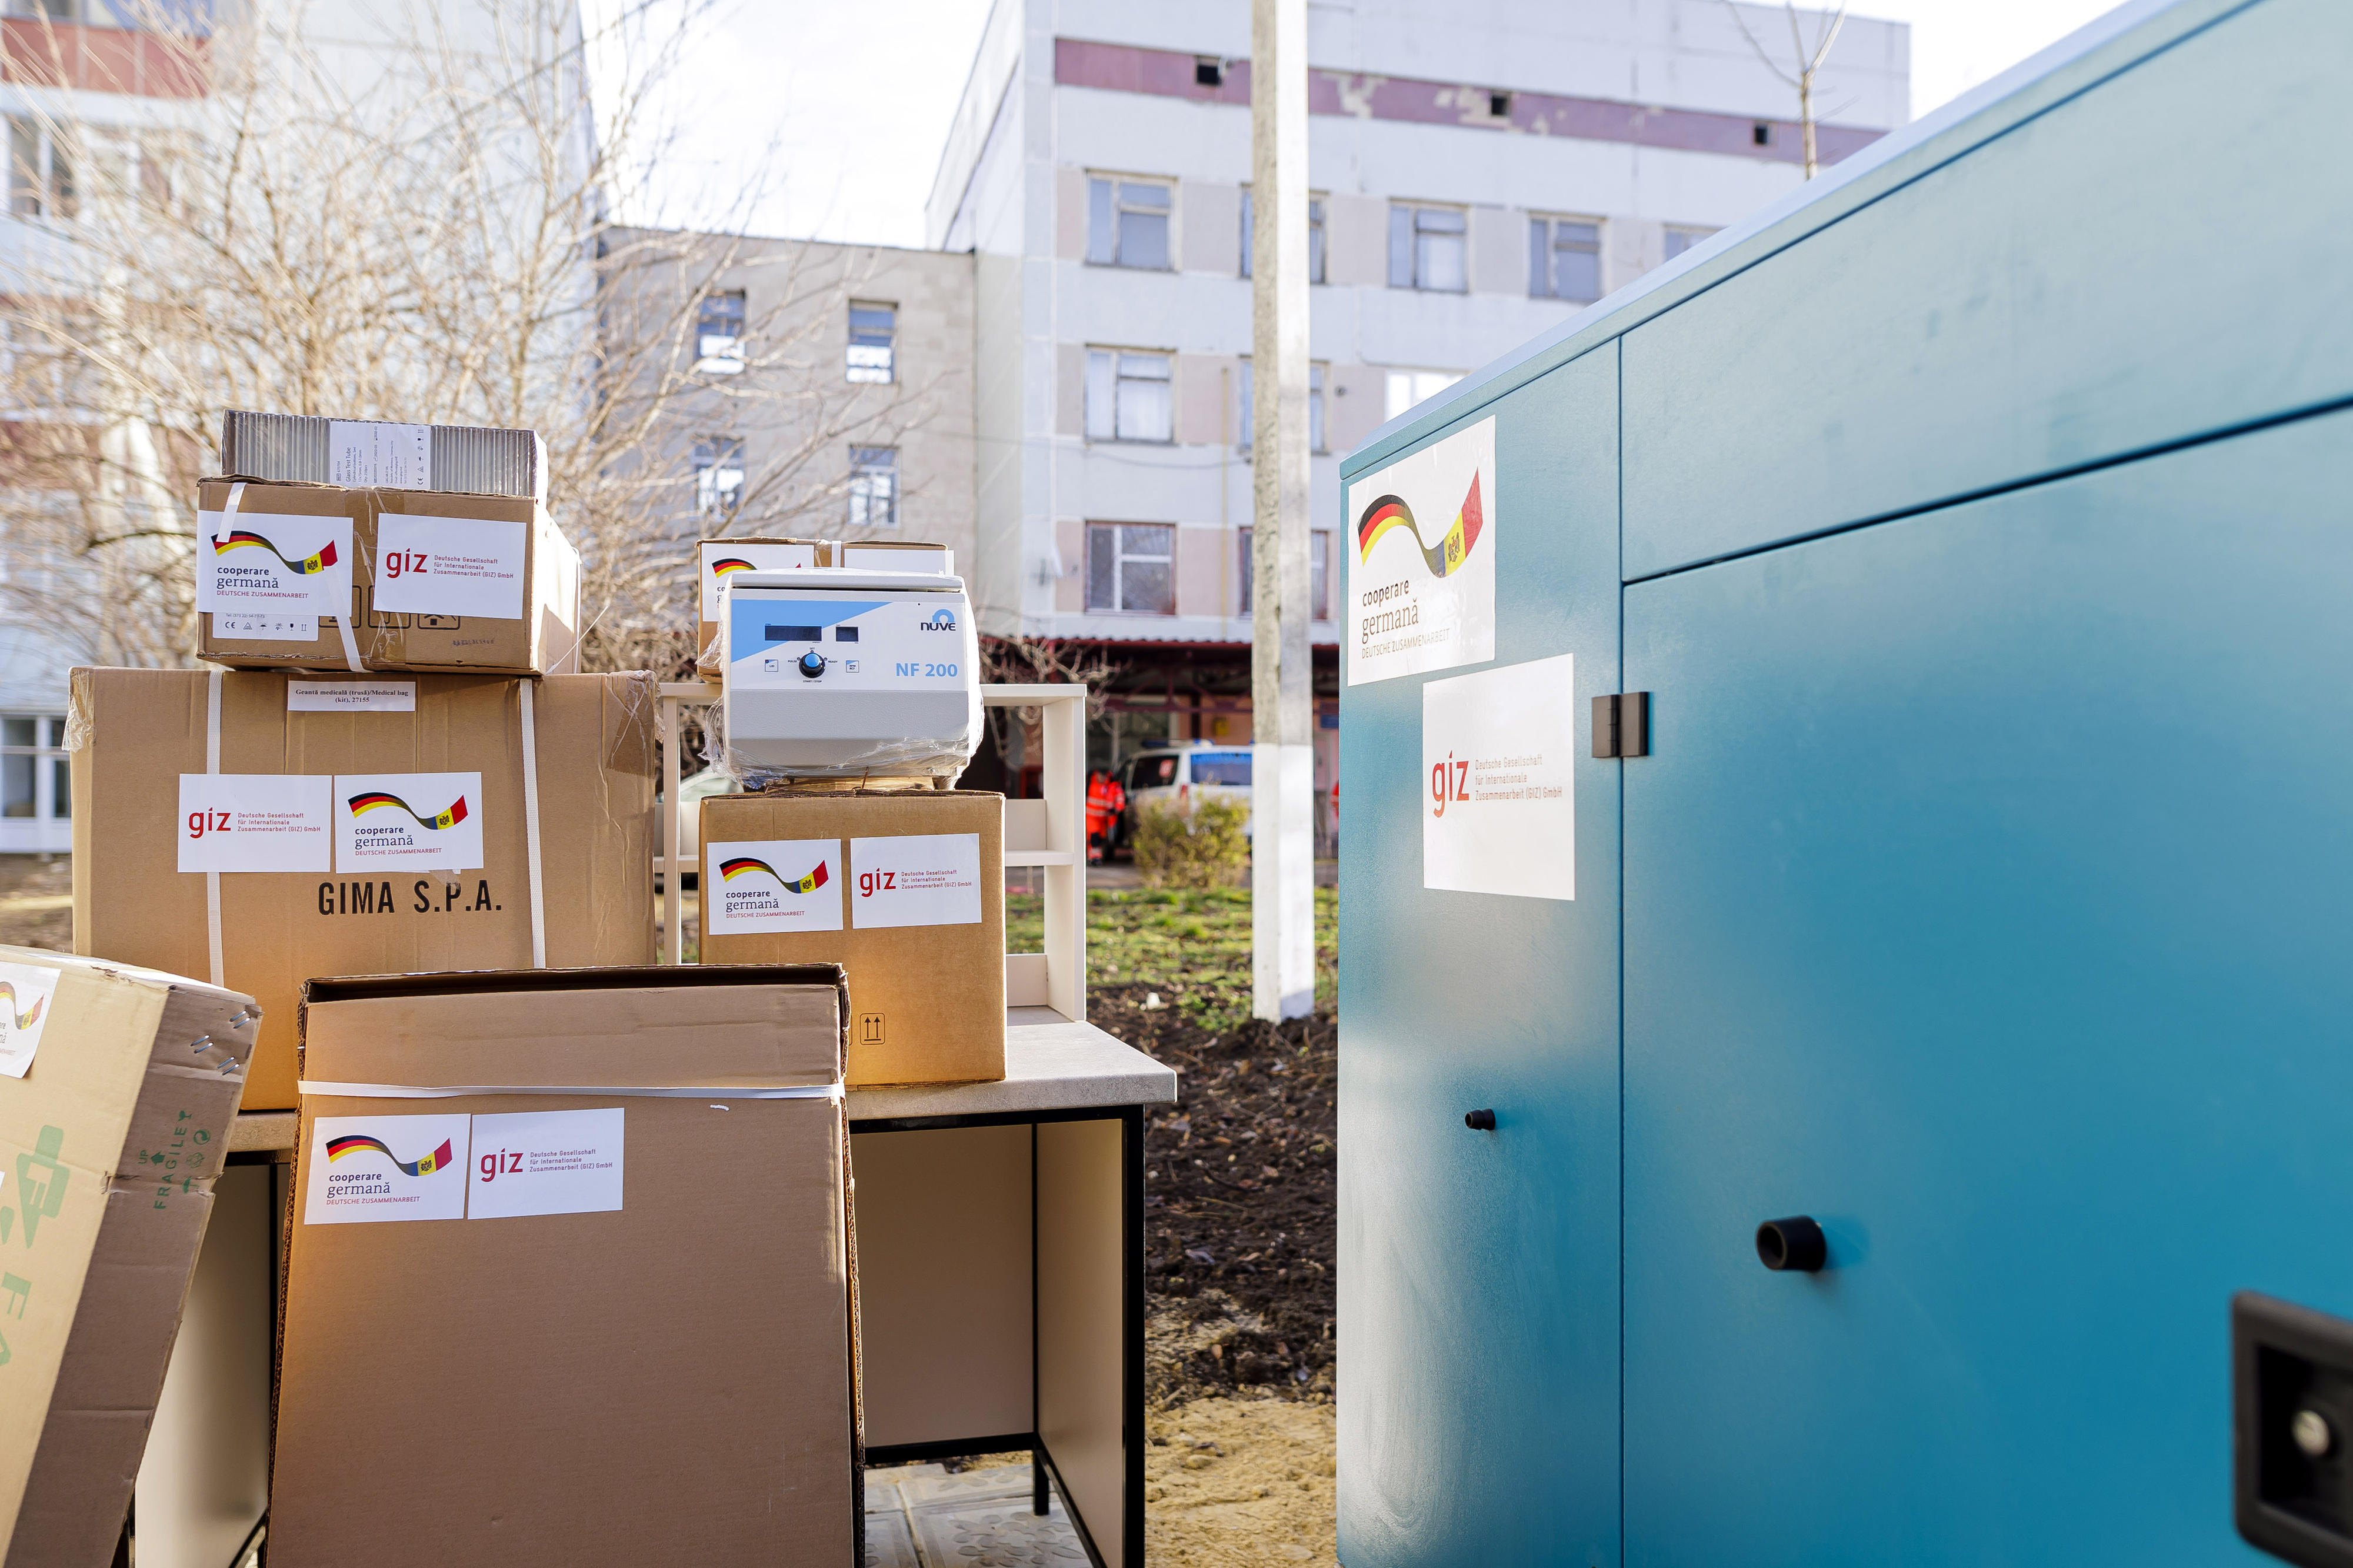 Generator und medizinische Ausrüstung für ein moldauisches Gesundheitszentrum, das ukrainischen Flüchtlingen und Einheimischen zugute kommt